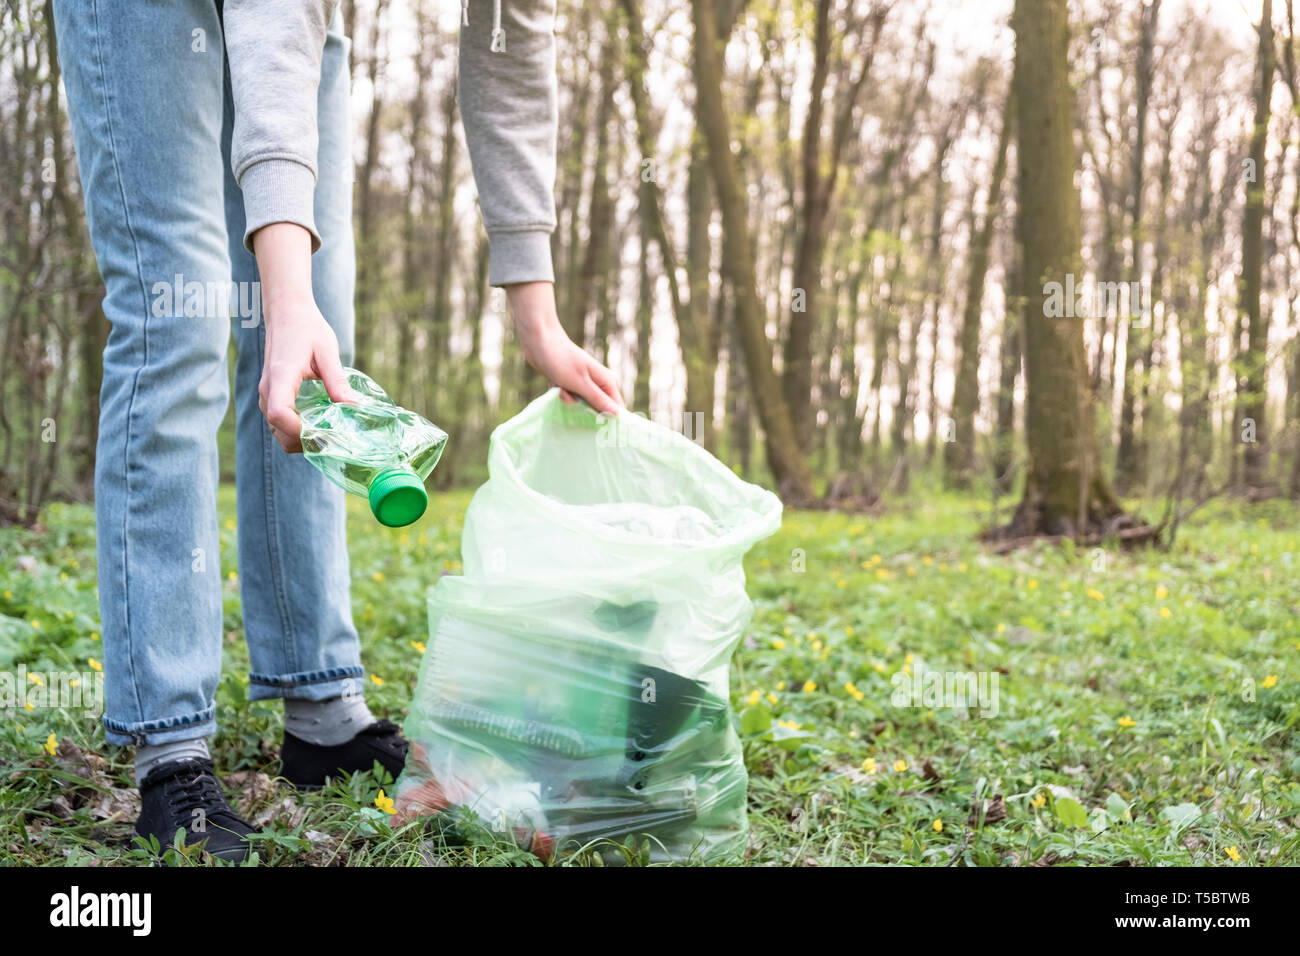 Nettoyer la forêt de déchets plastiques. Personne ramasse une bouteille en plastique dans les bois, concept de sensibilisation en plastique à l'activisme. Banque D'Images